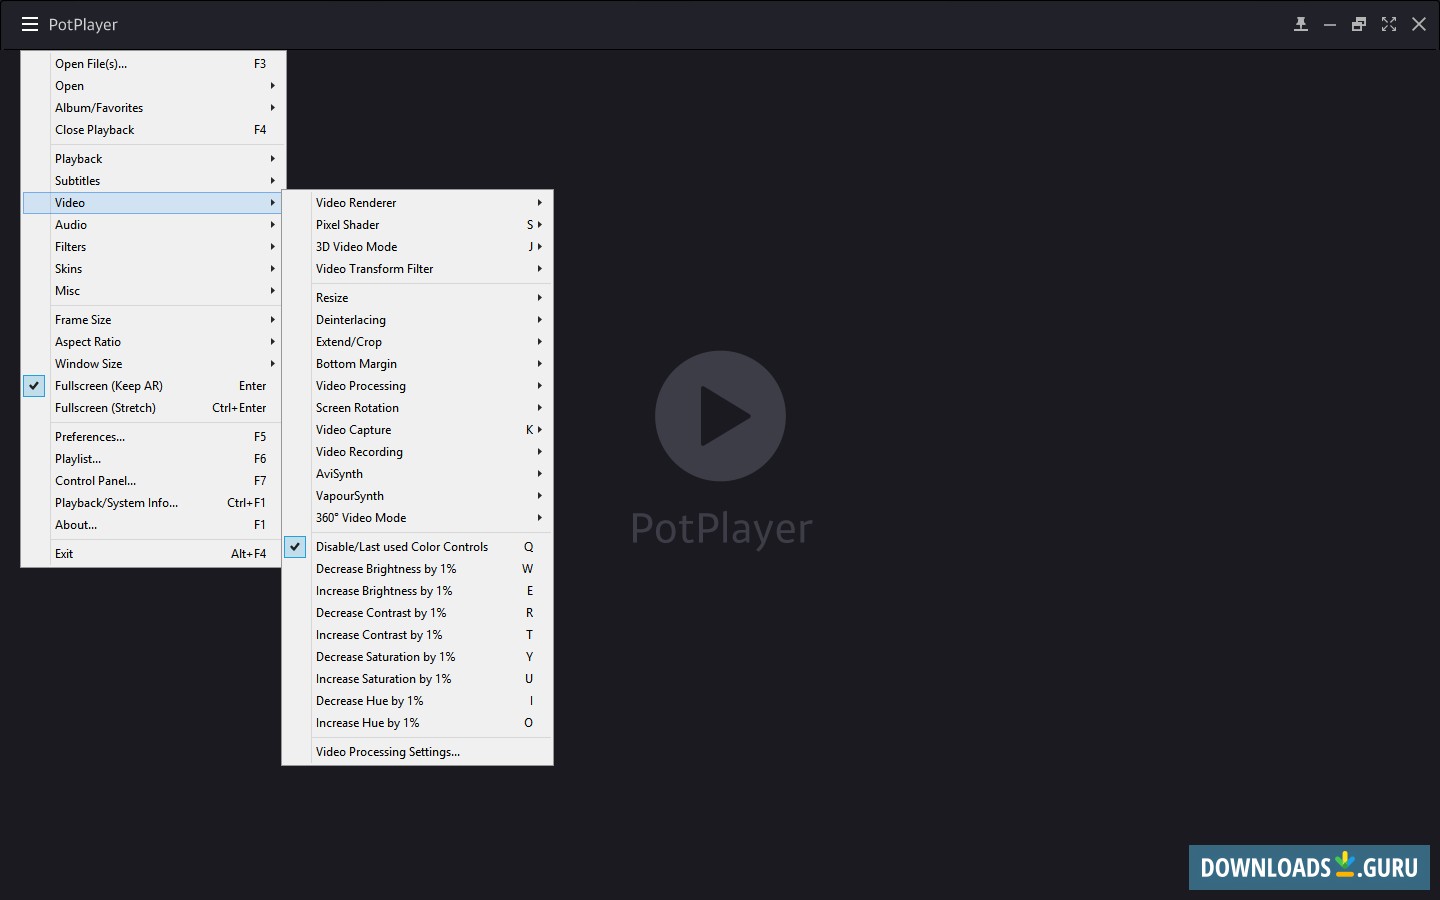 Daum PotPlayer 1.7.21953 download the last version for mac